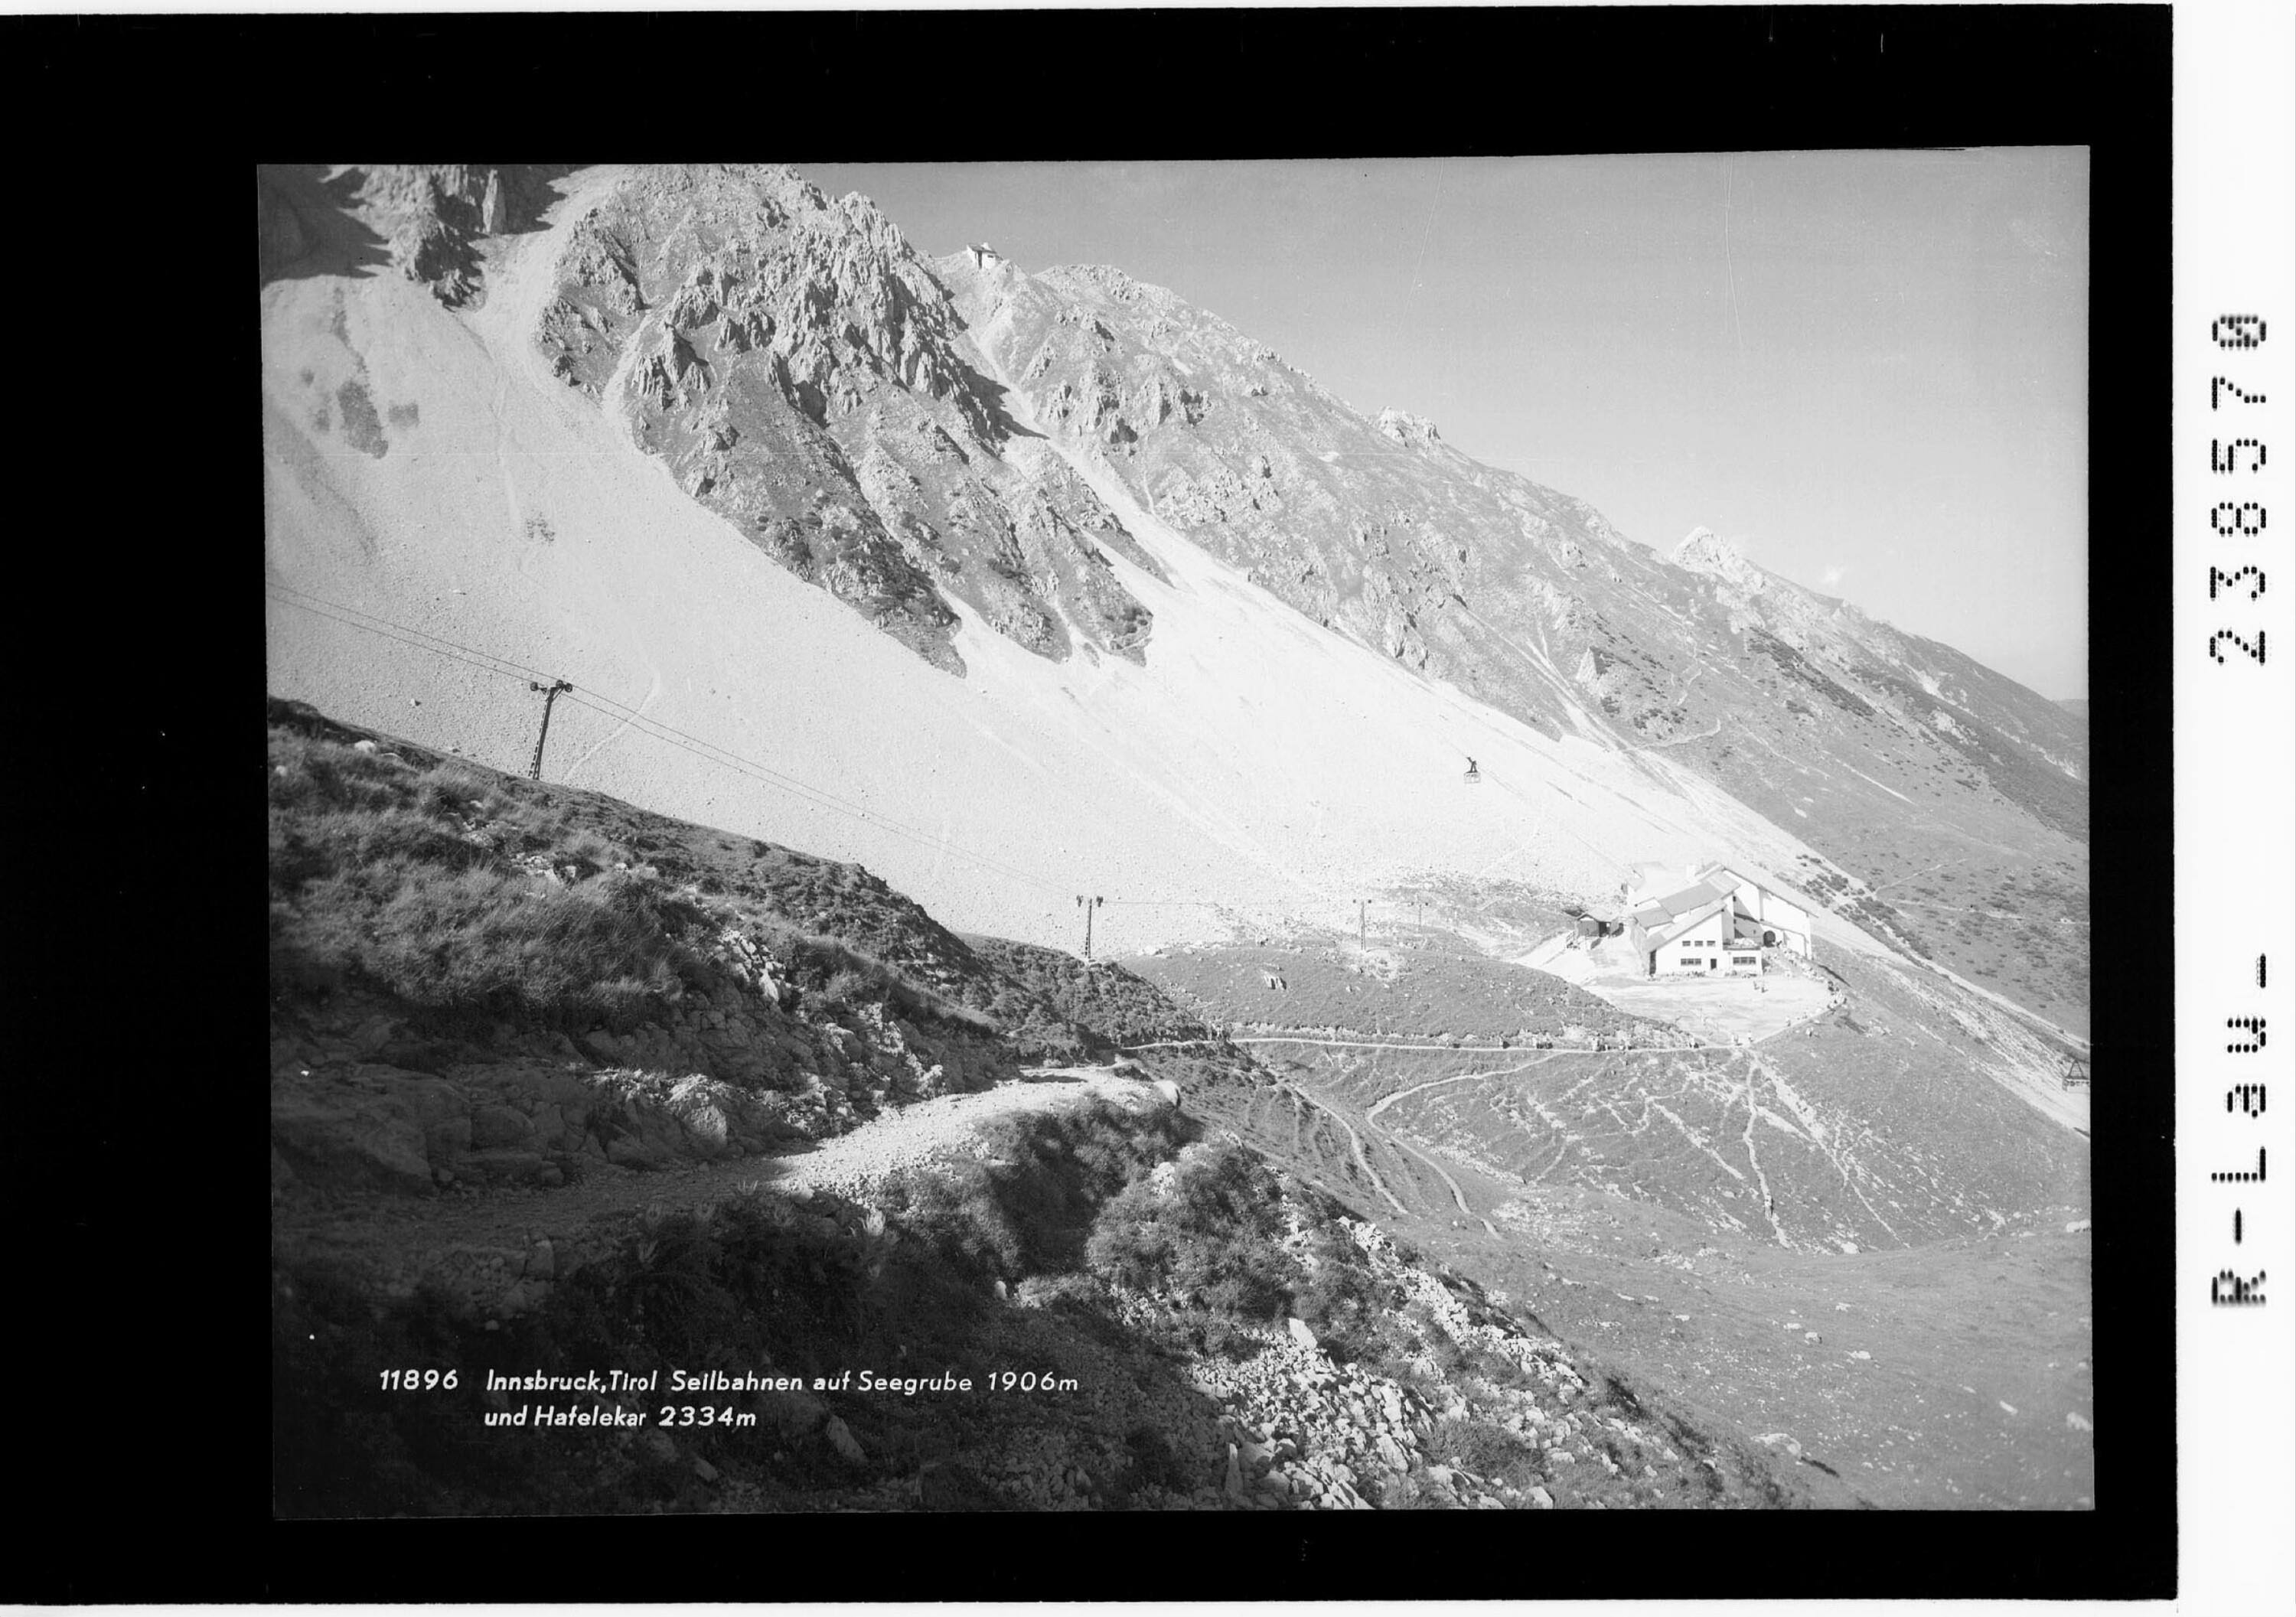 Innsbruck / Tirol / Seilbahnen auf Seegrube 1906 m und Hafelekar 2334 m></div>


    <hr>
    <div class=